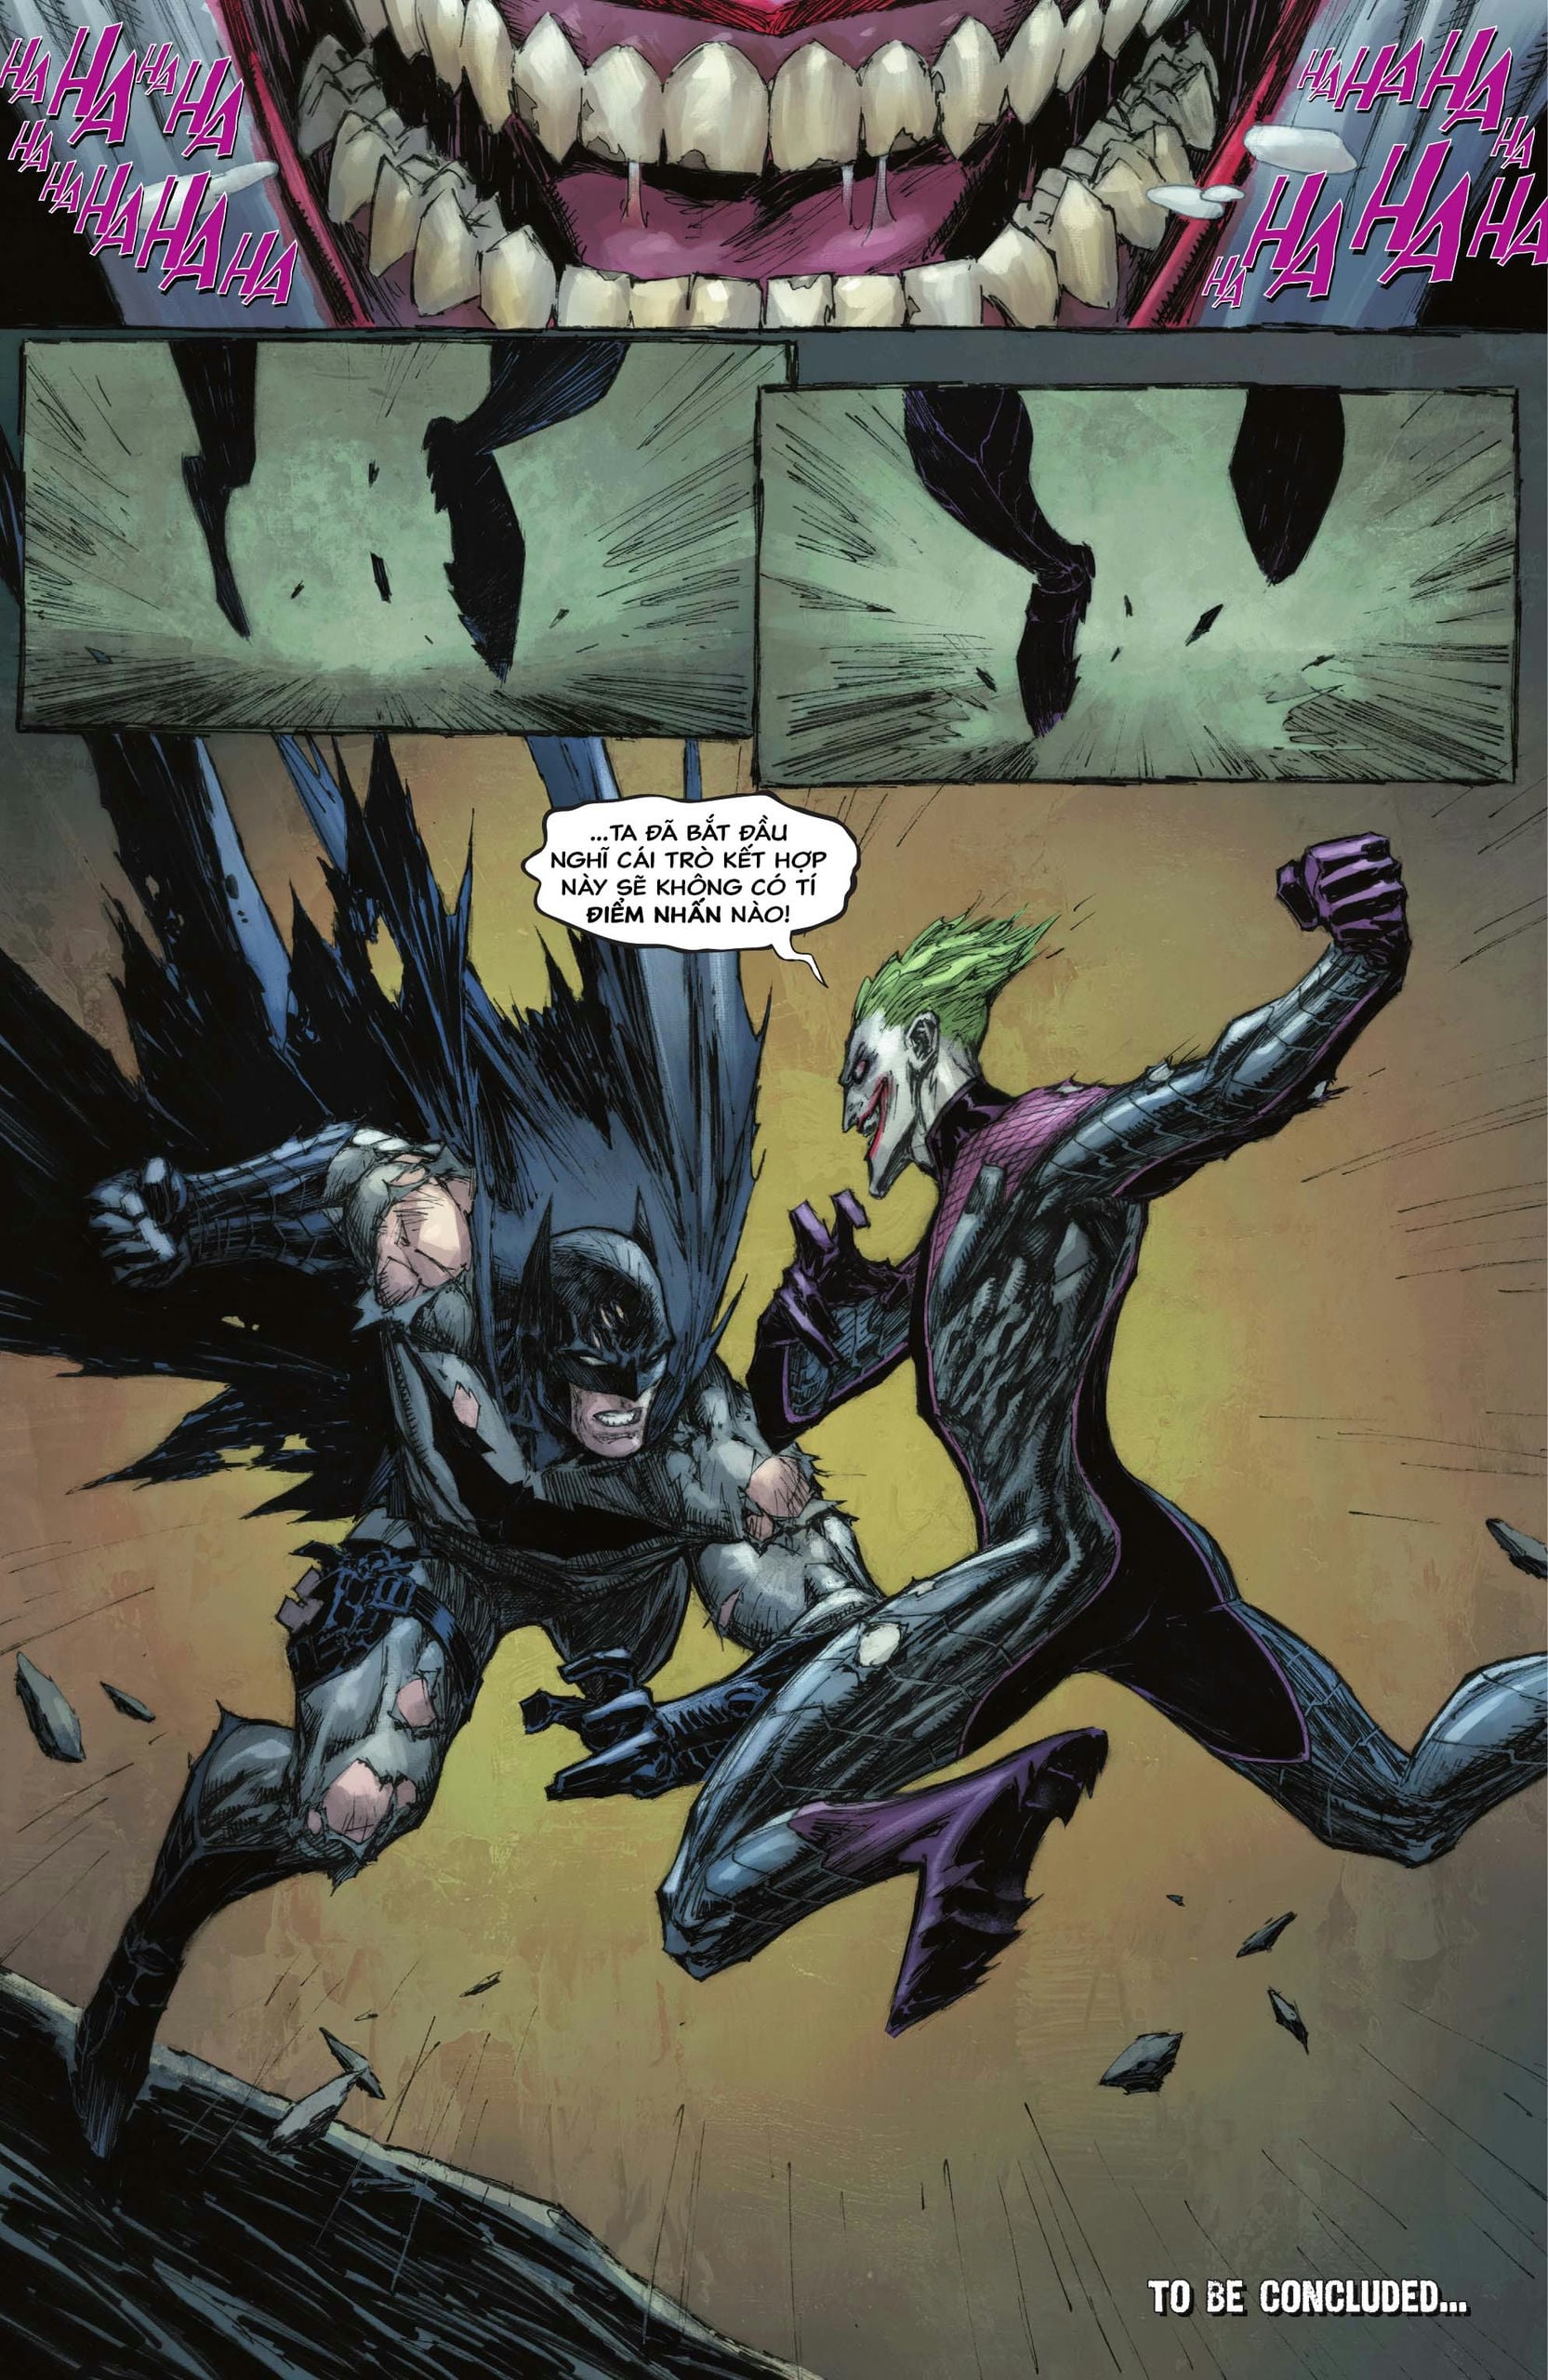 https://langgeek.net/wp-content/webpc-passthru.php?src=https://langgeek.net/wp-content/uploads/2023/05/Batman-_-The-Joker-The-Deadly-Duo-2022-006-024.jpg&nocache=1